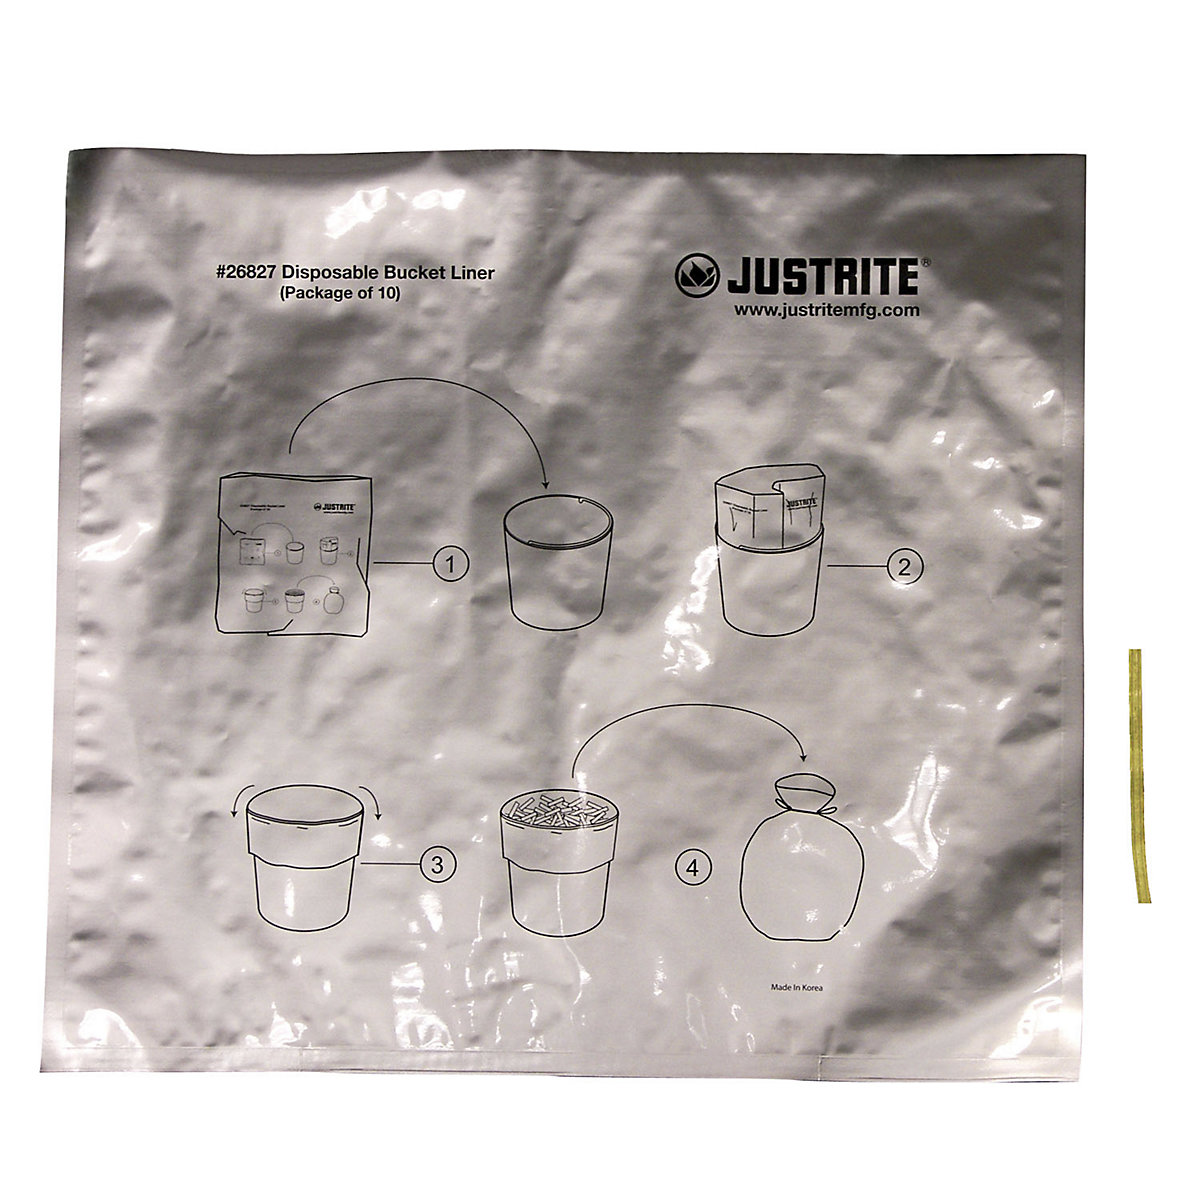 Posebne aluminijske vreće za otpad za stojeće pepeljare – Justrite